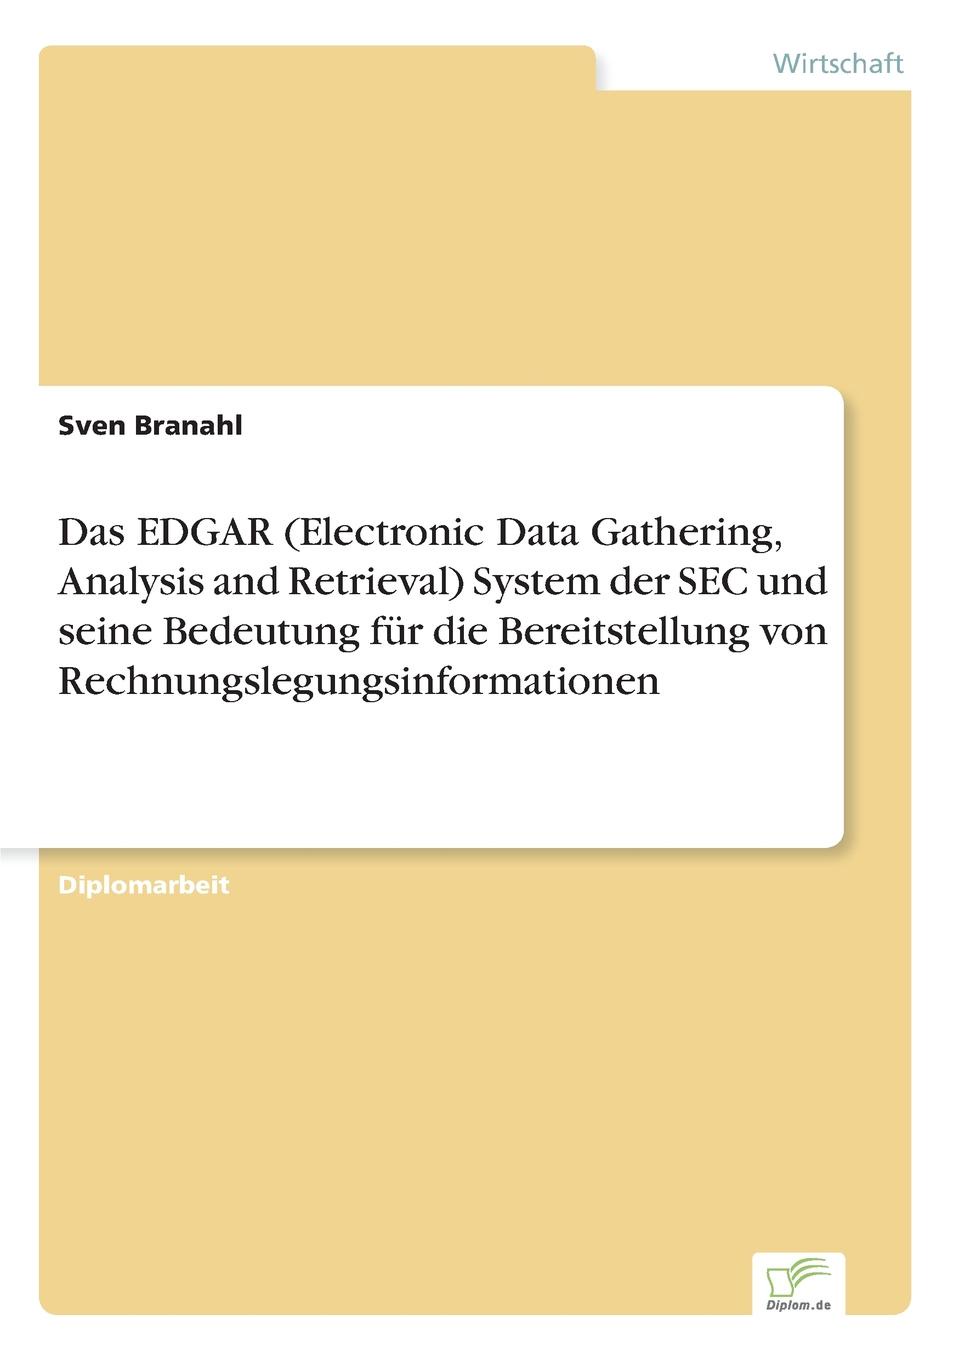 Das EDGAR (Electronic Data Gathering, Analysis and Retrieval) System der SEC und seine Bedeutung fur die Bereitstellung von Rechnungslegungsinformationen